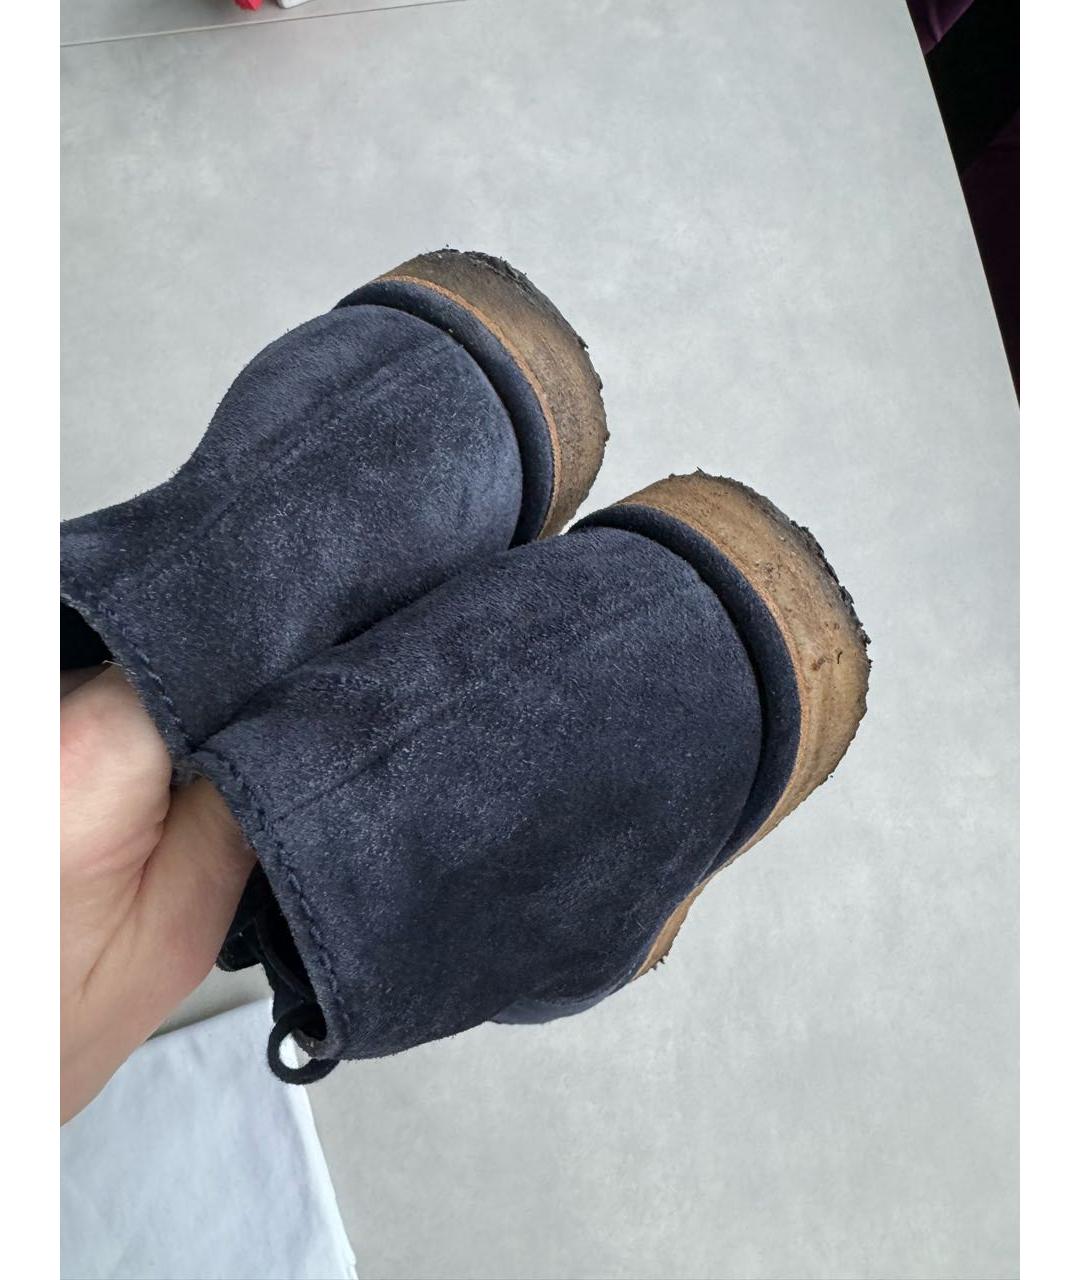 CHANEL PRE-OWNED Темно-синие замшевые ботинки, фото 3